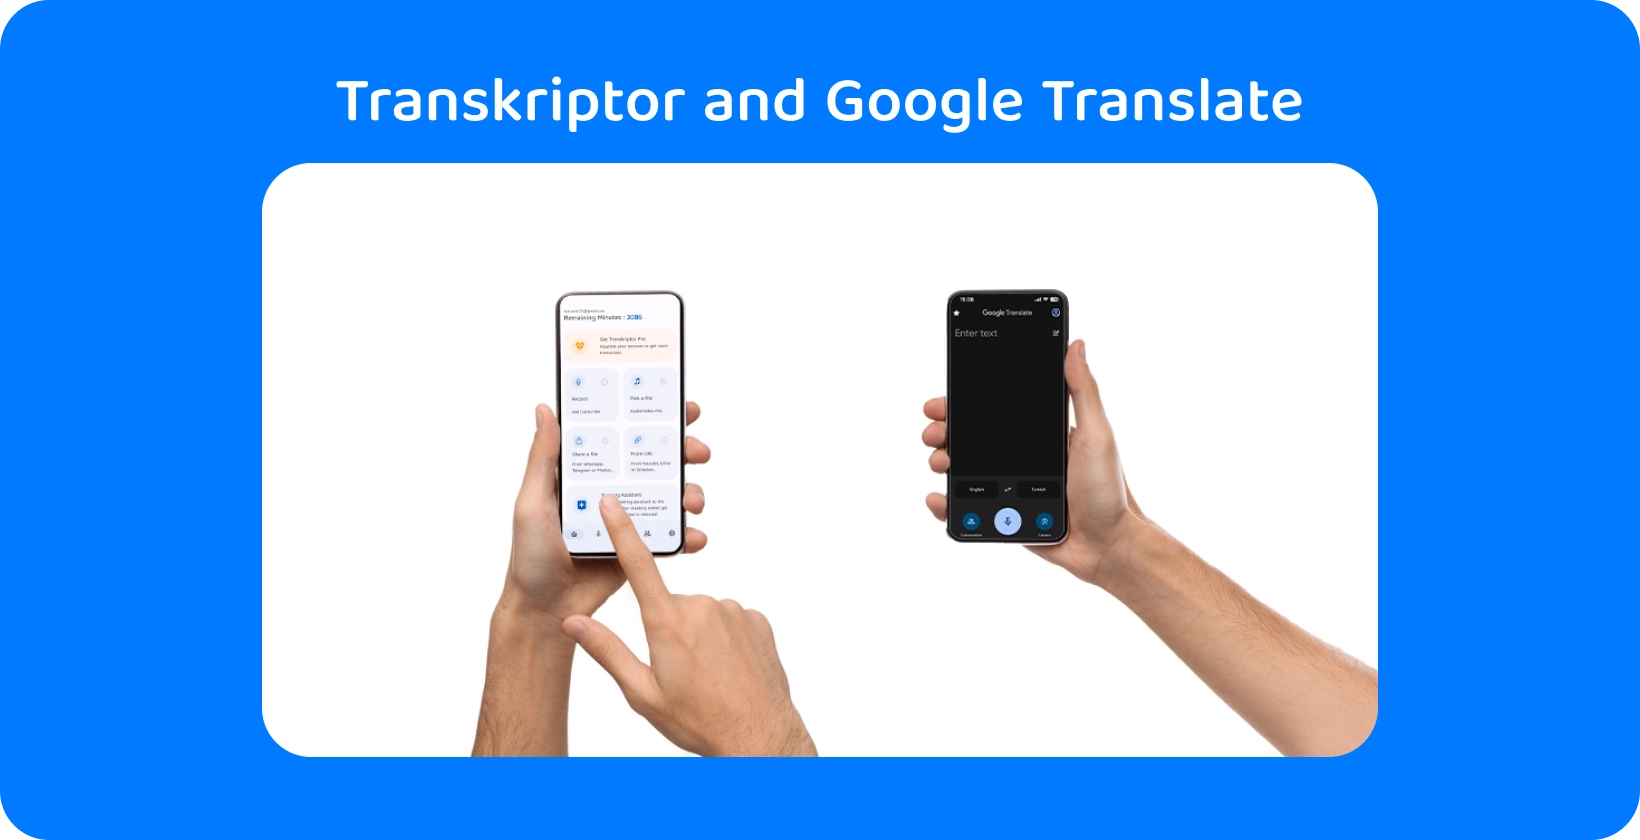 Dos manos sosteniendo teléfonos inteligentes con Transkriptor y Google Translate, demostrando la transcripción y traducción de audio.